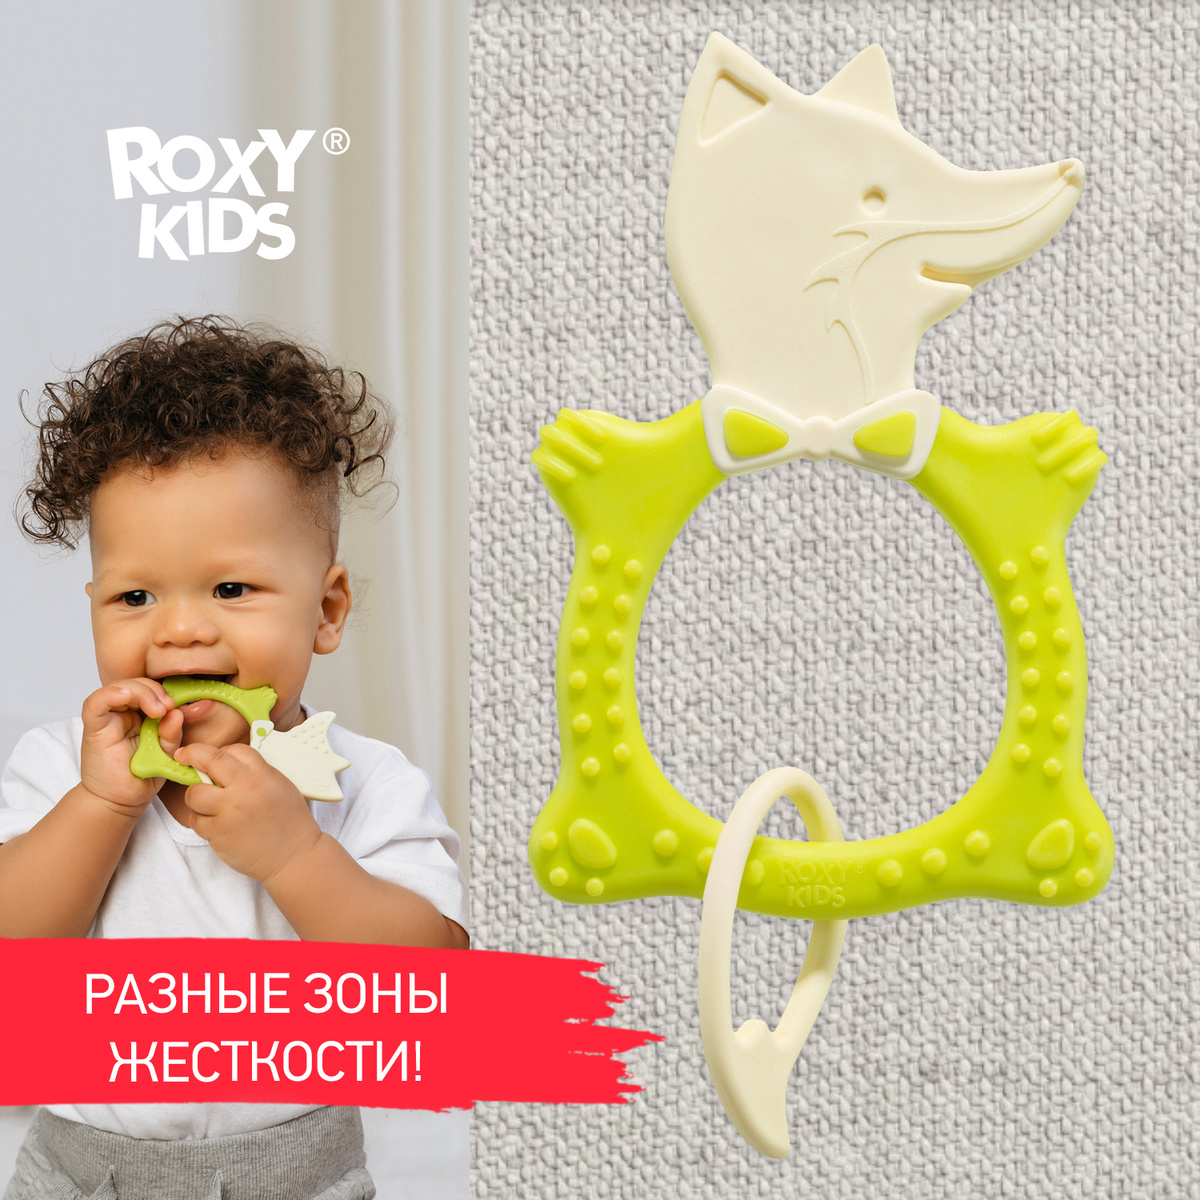 Прорезыватель для зубов ROXY-KIDS FOX TEETHER, цвет зеленый / Детский грызунок для малыша / Игрушка для #1